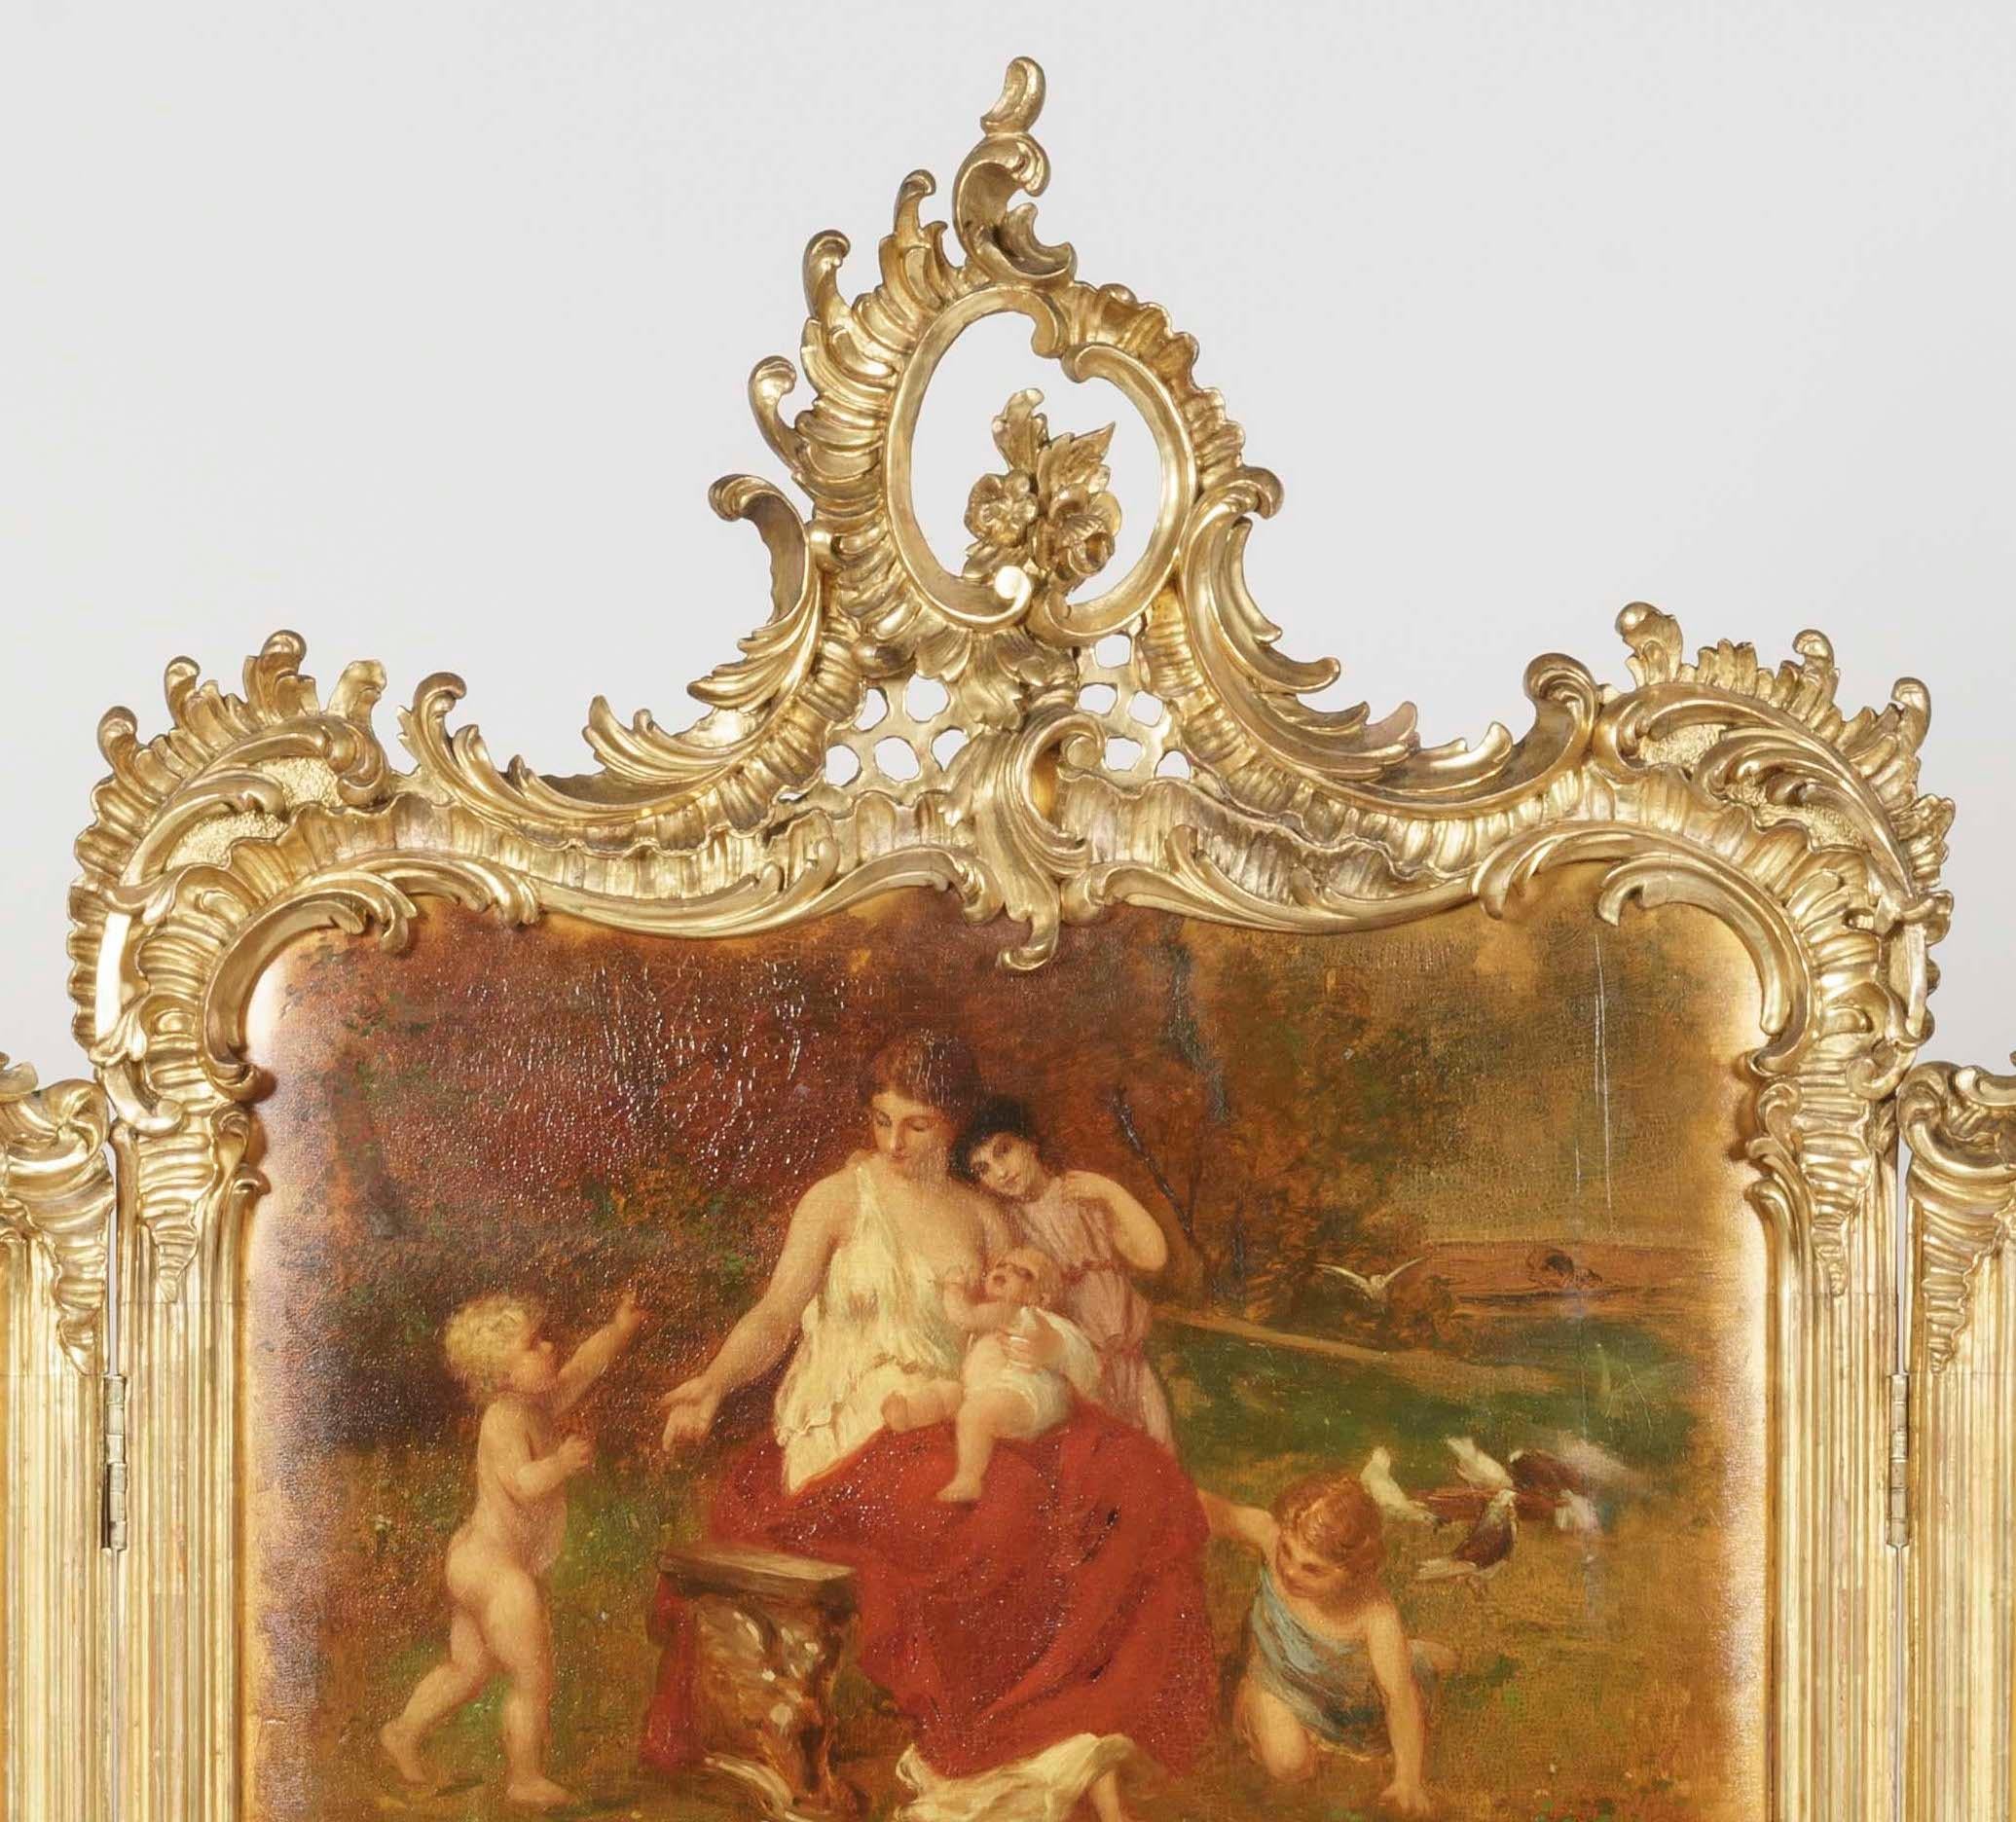 Un écran Foldes Martin à trois volets
A la manière de Louis XV

Le cadre est en bois sculpté et doré de style rococo, les panneaux du triptyque en Vernis Martin représentent des scènes idylliques peintes de jeunes filles et d'enfants classiques